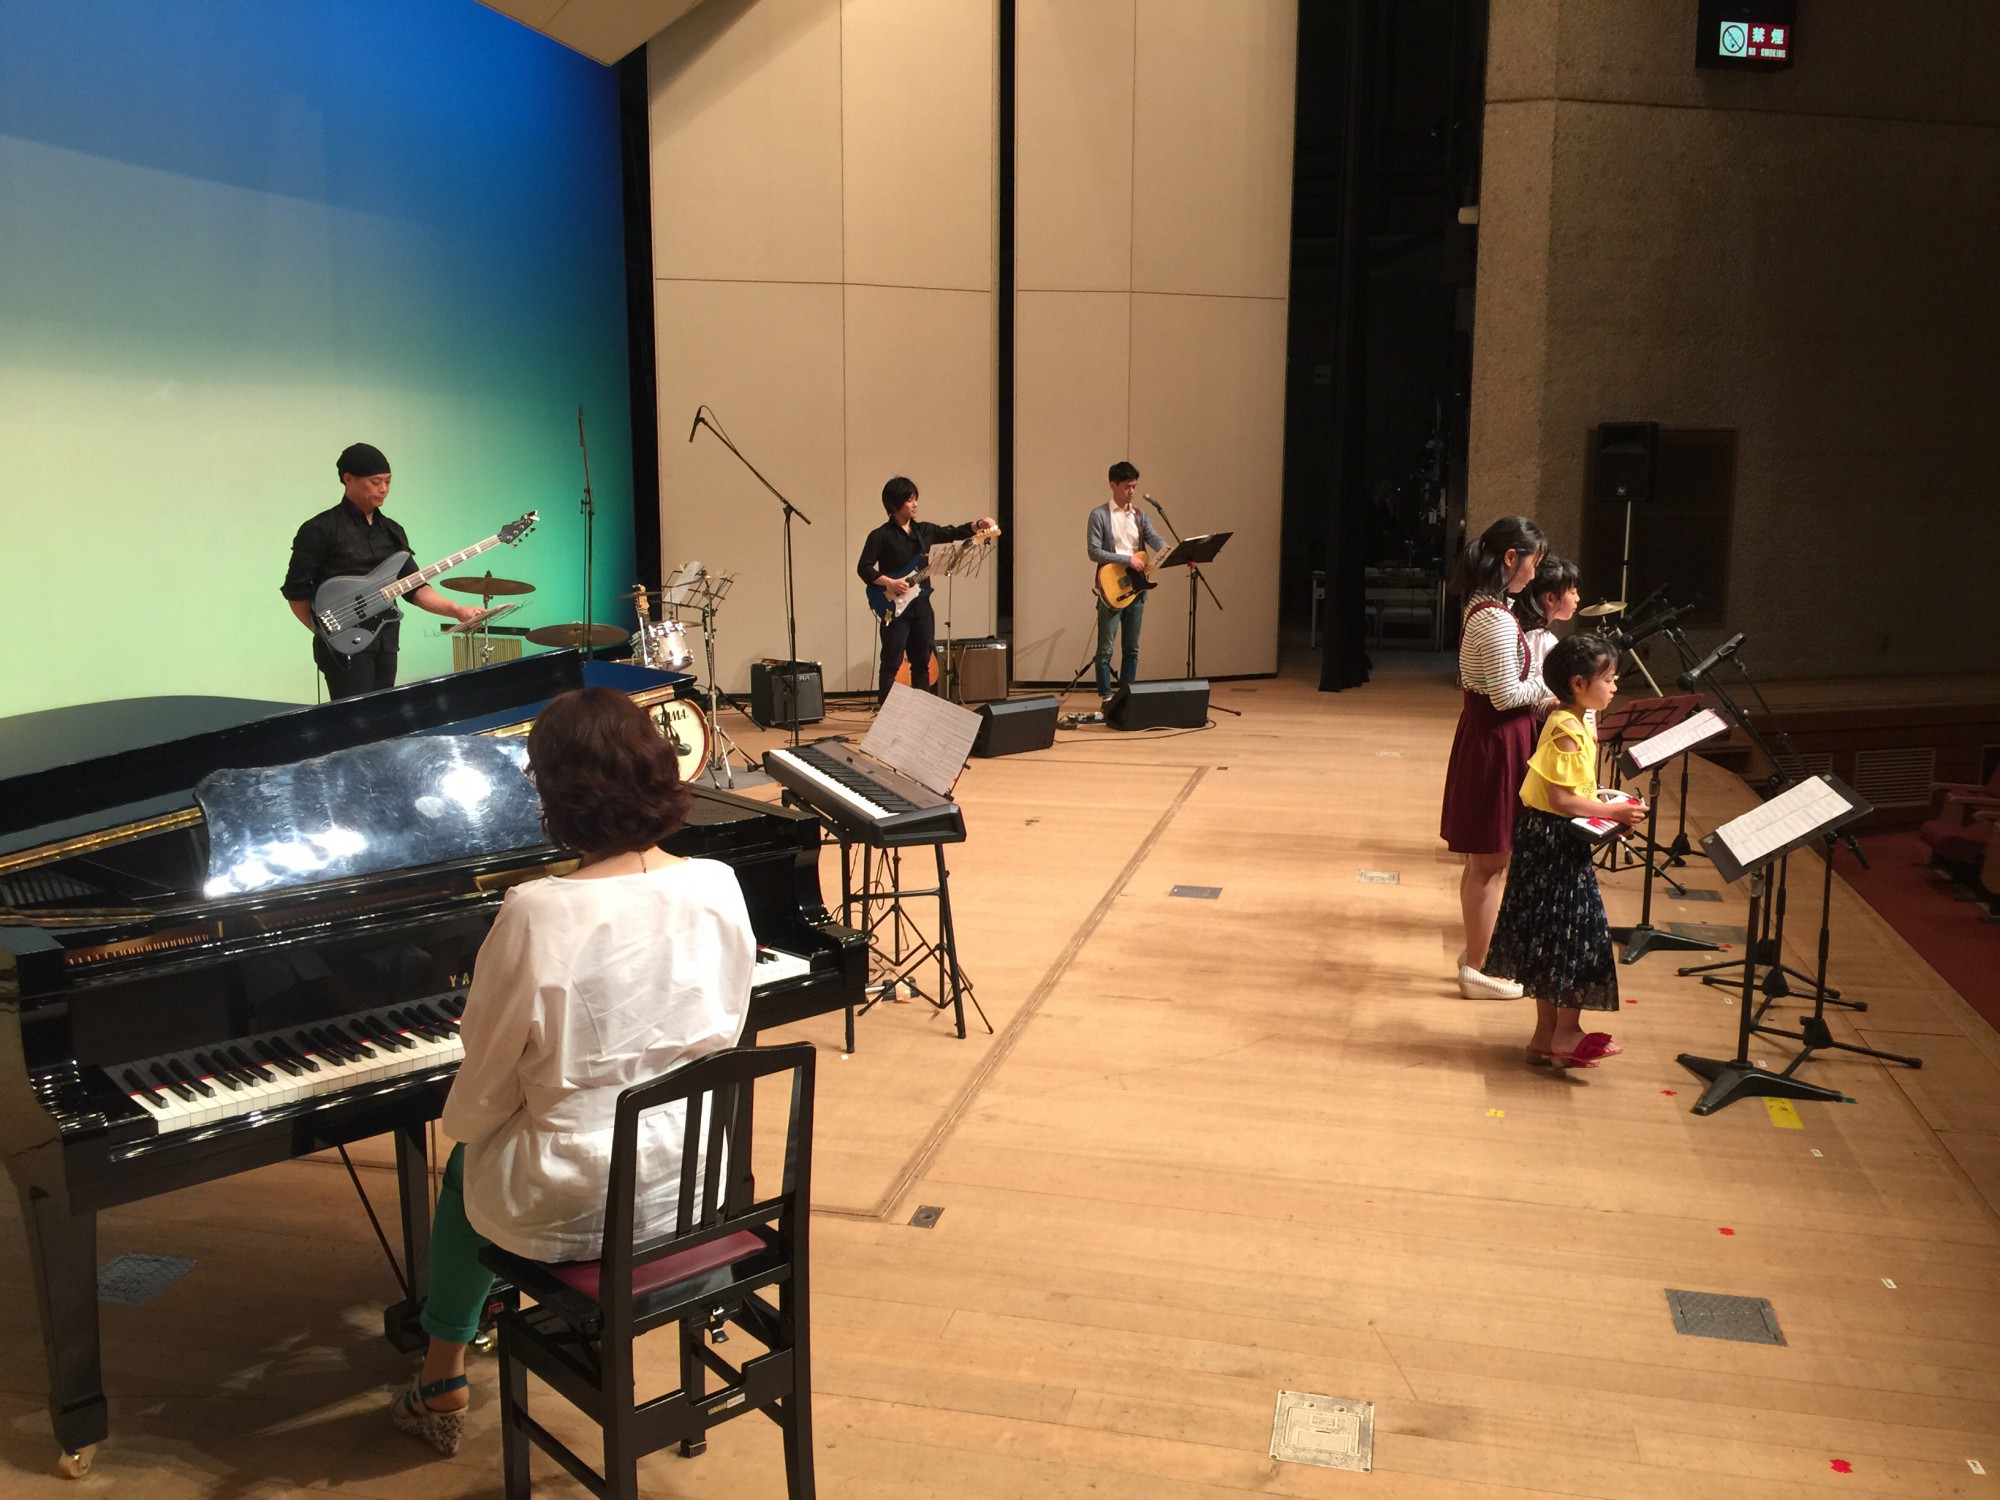 ブログ カツオクンミュージックスクール 豊田市 瀬戸市 長久手市 みよし市の音楽教室